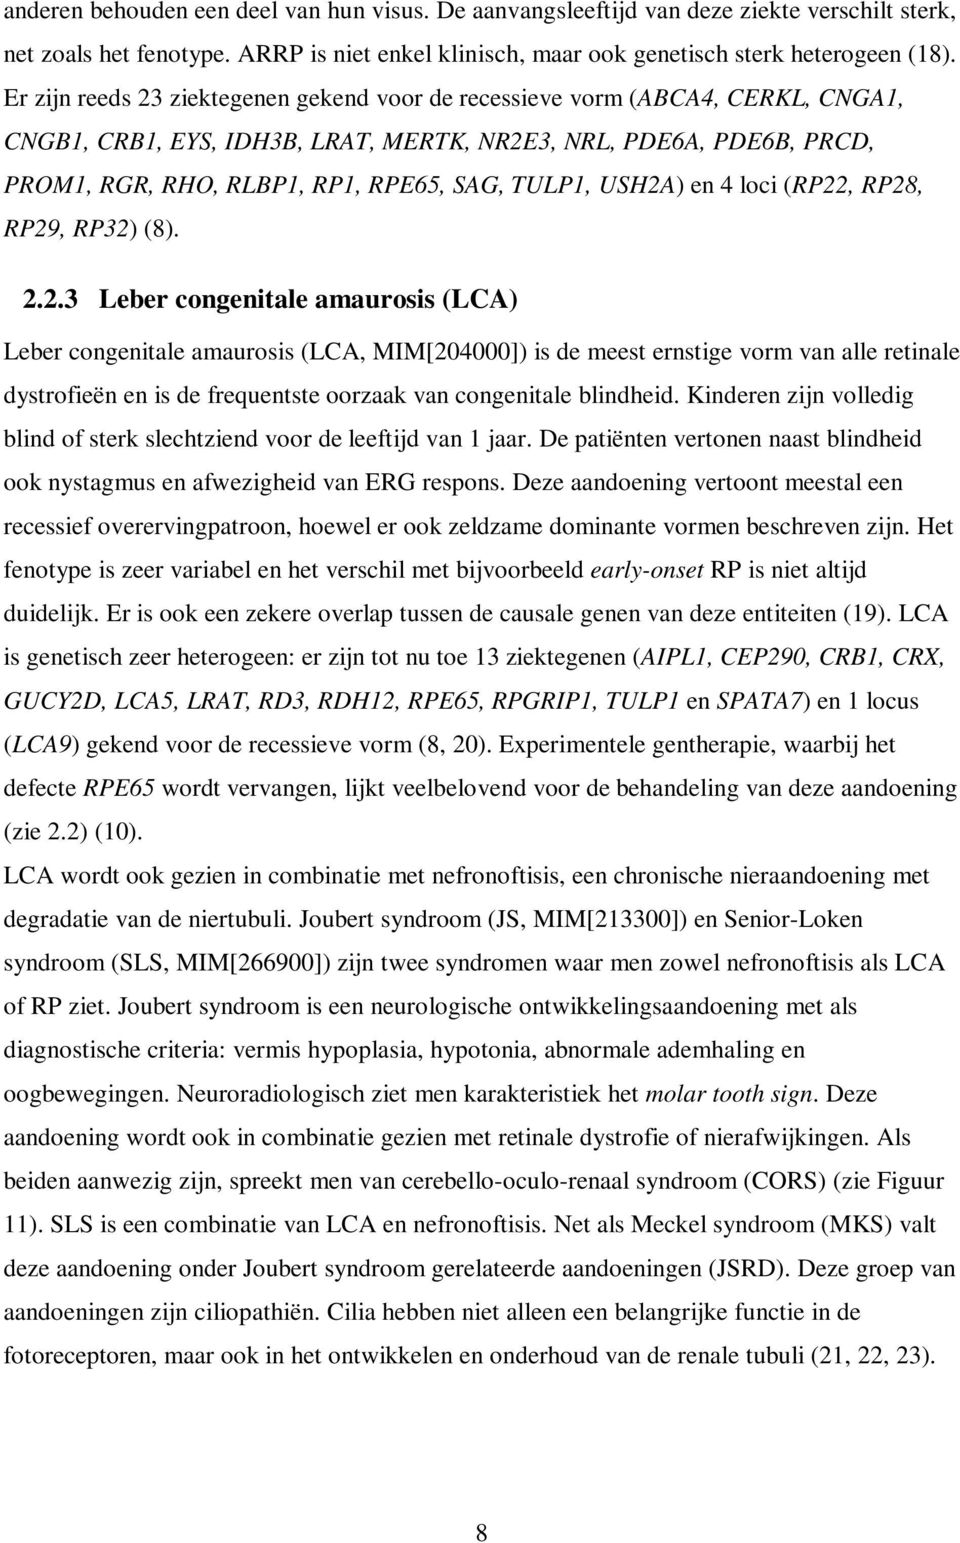 USH2A) en 4 loci (RP22, RP28, RP29, RP32) (8). 2.2.3 Leber congenitale amaurosis (LCA) Leber congenitale amaurosis (LCA, MIM[204000]) is de meest ernstige vorm van alle retinale dystrofieën en is de frequentste oorzaak van congenitale blindheid.